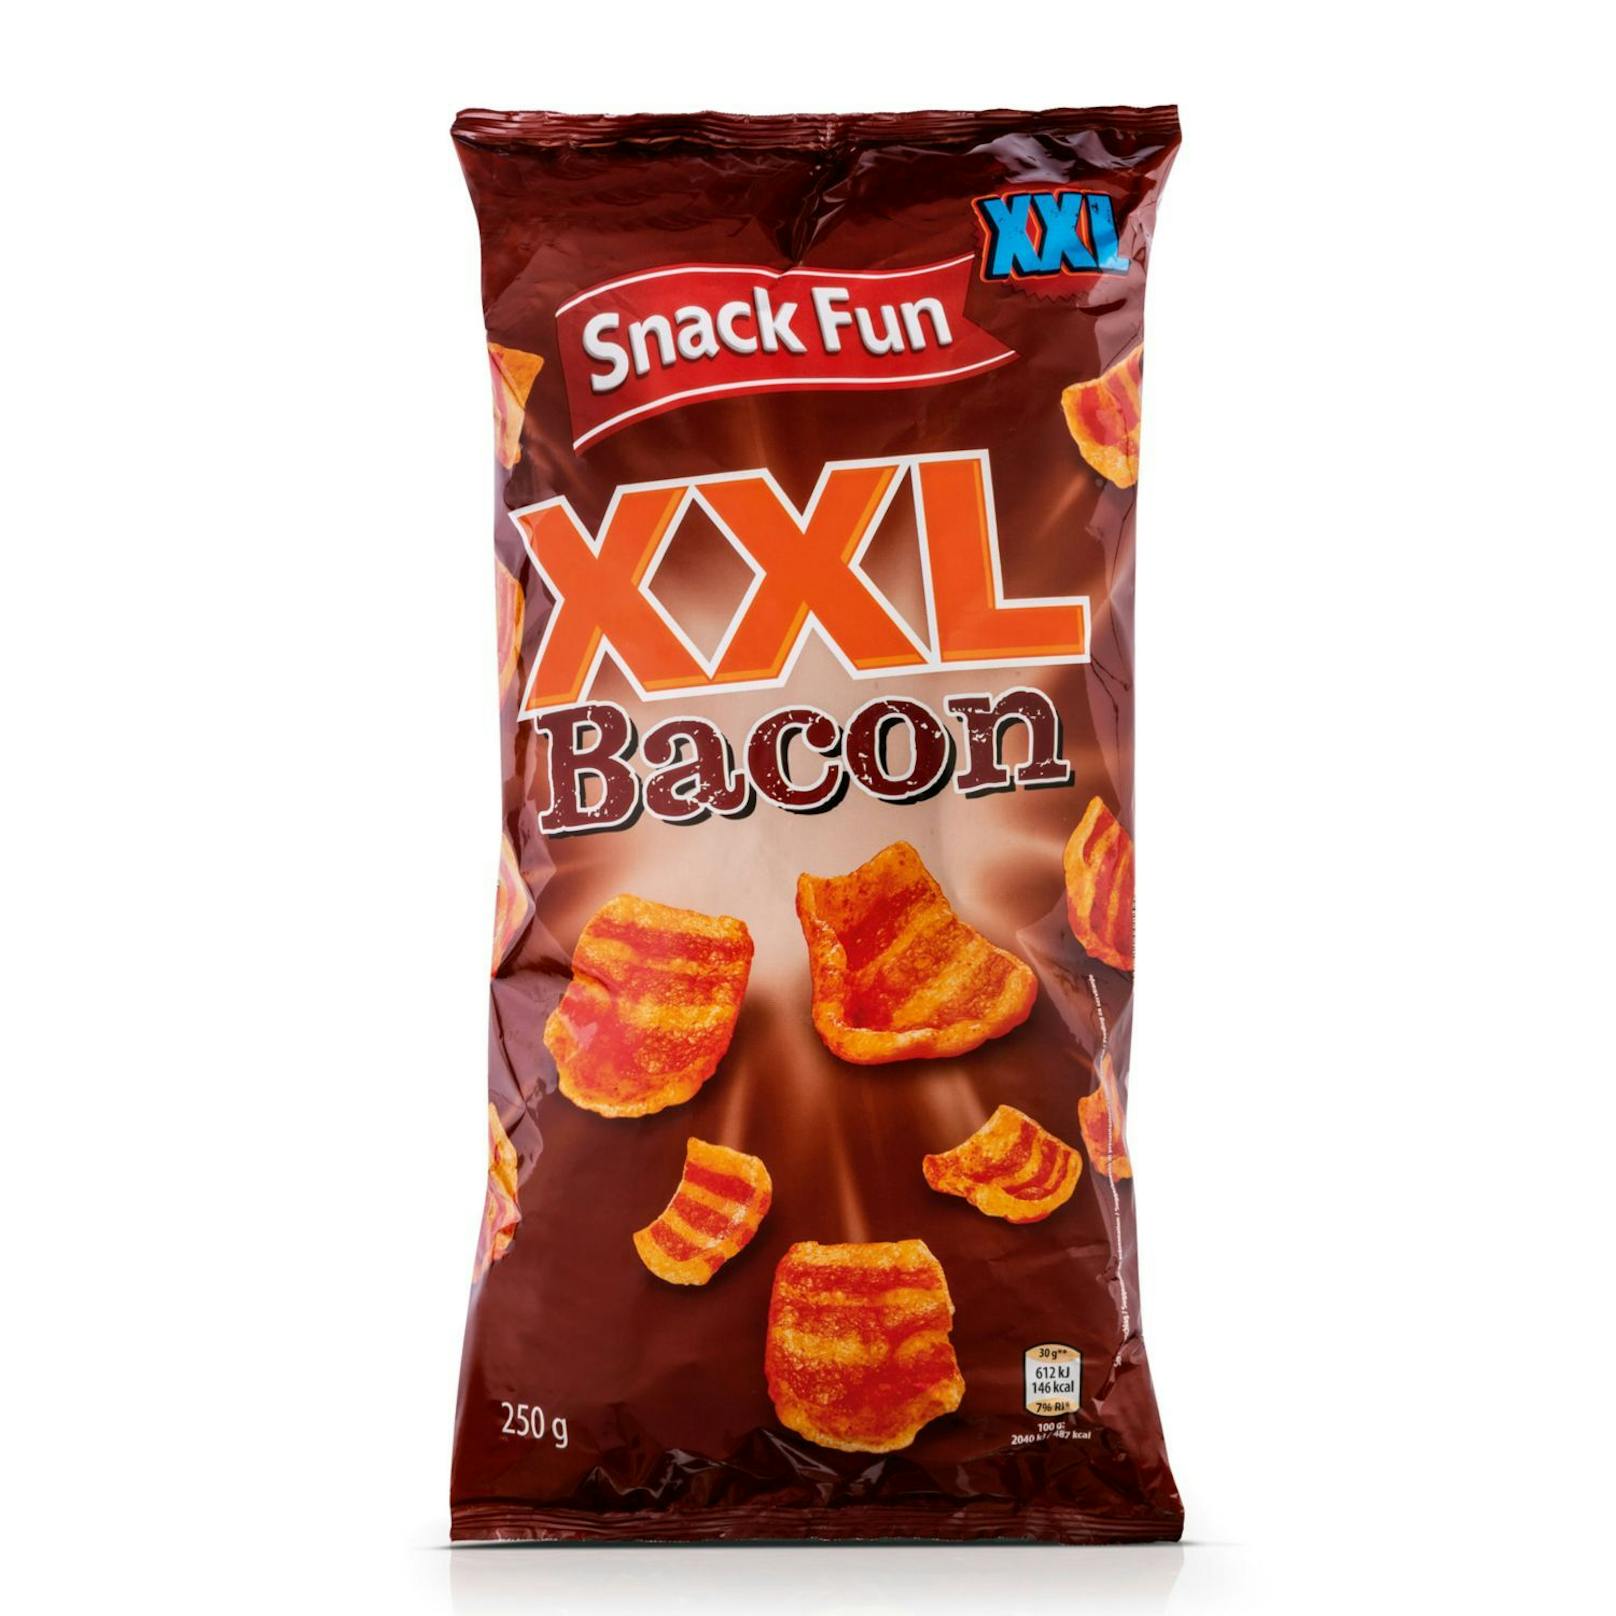 Snack Fun XXL Bacon - hier geht's zum herzhaften Genuss: <strong><a target="_blank" href="https://www.hofer.at/de/p.snack-fun-xxl-snacks-bacon-snack.000000000156492002.html">https://www.hofer.at</a></strong>